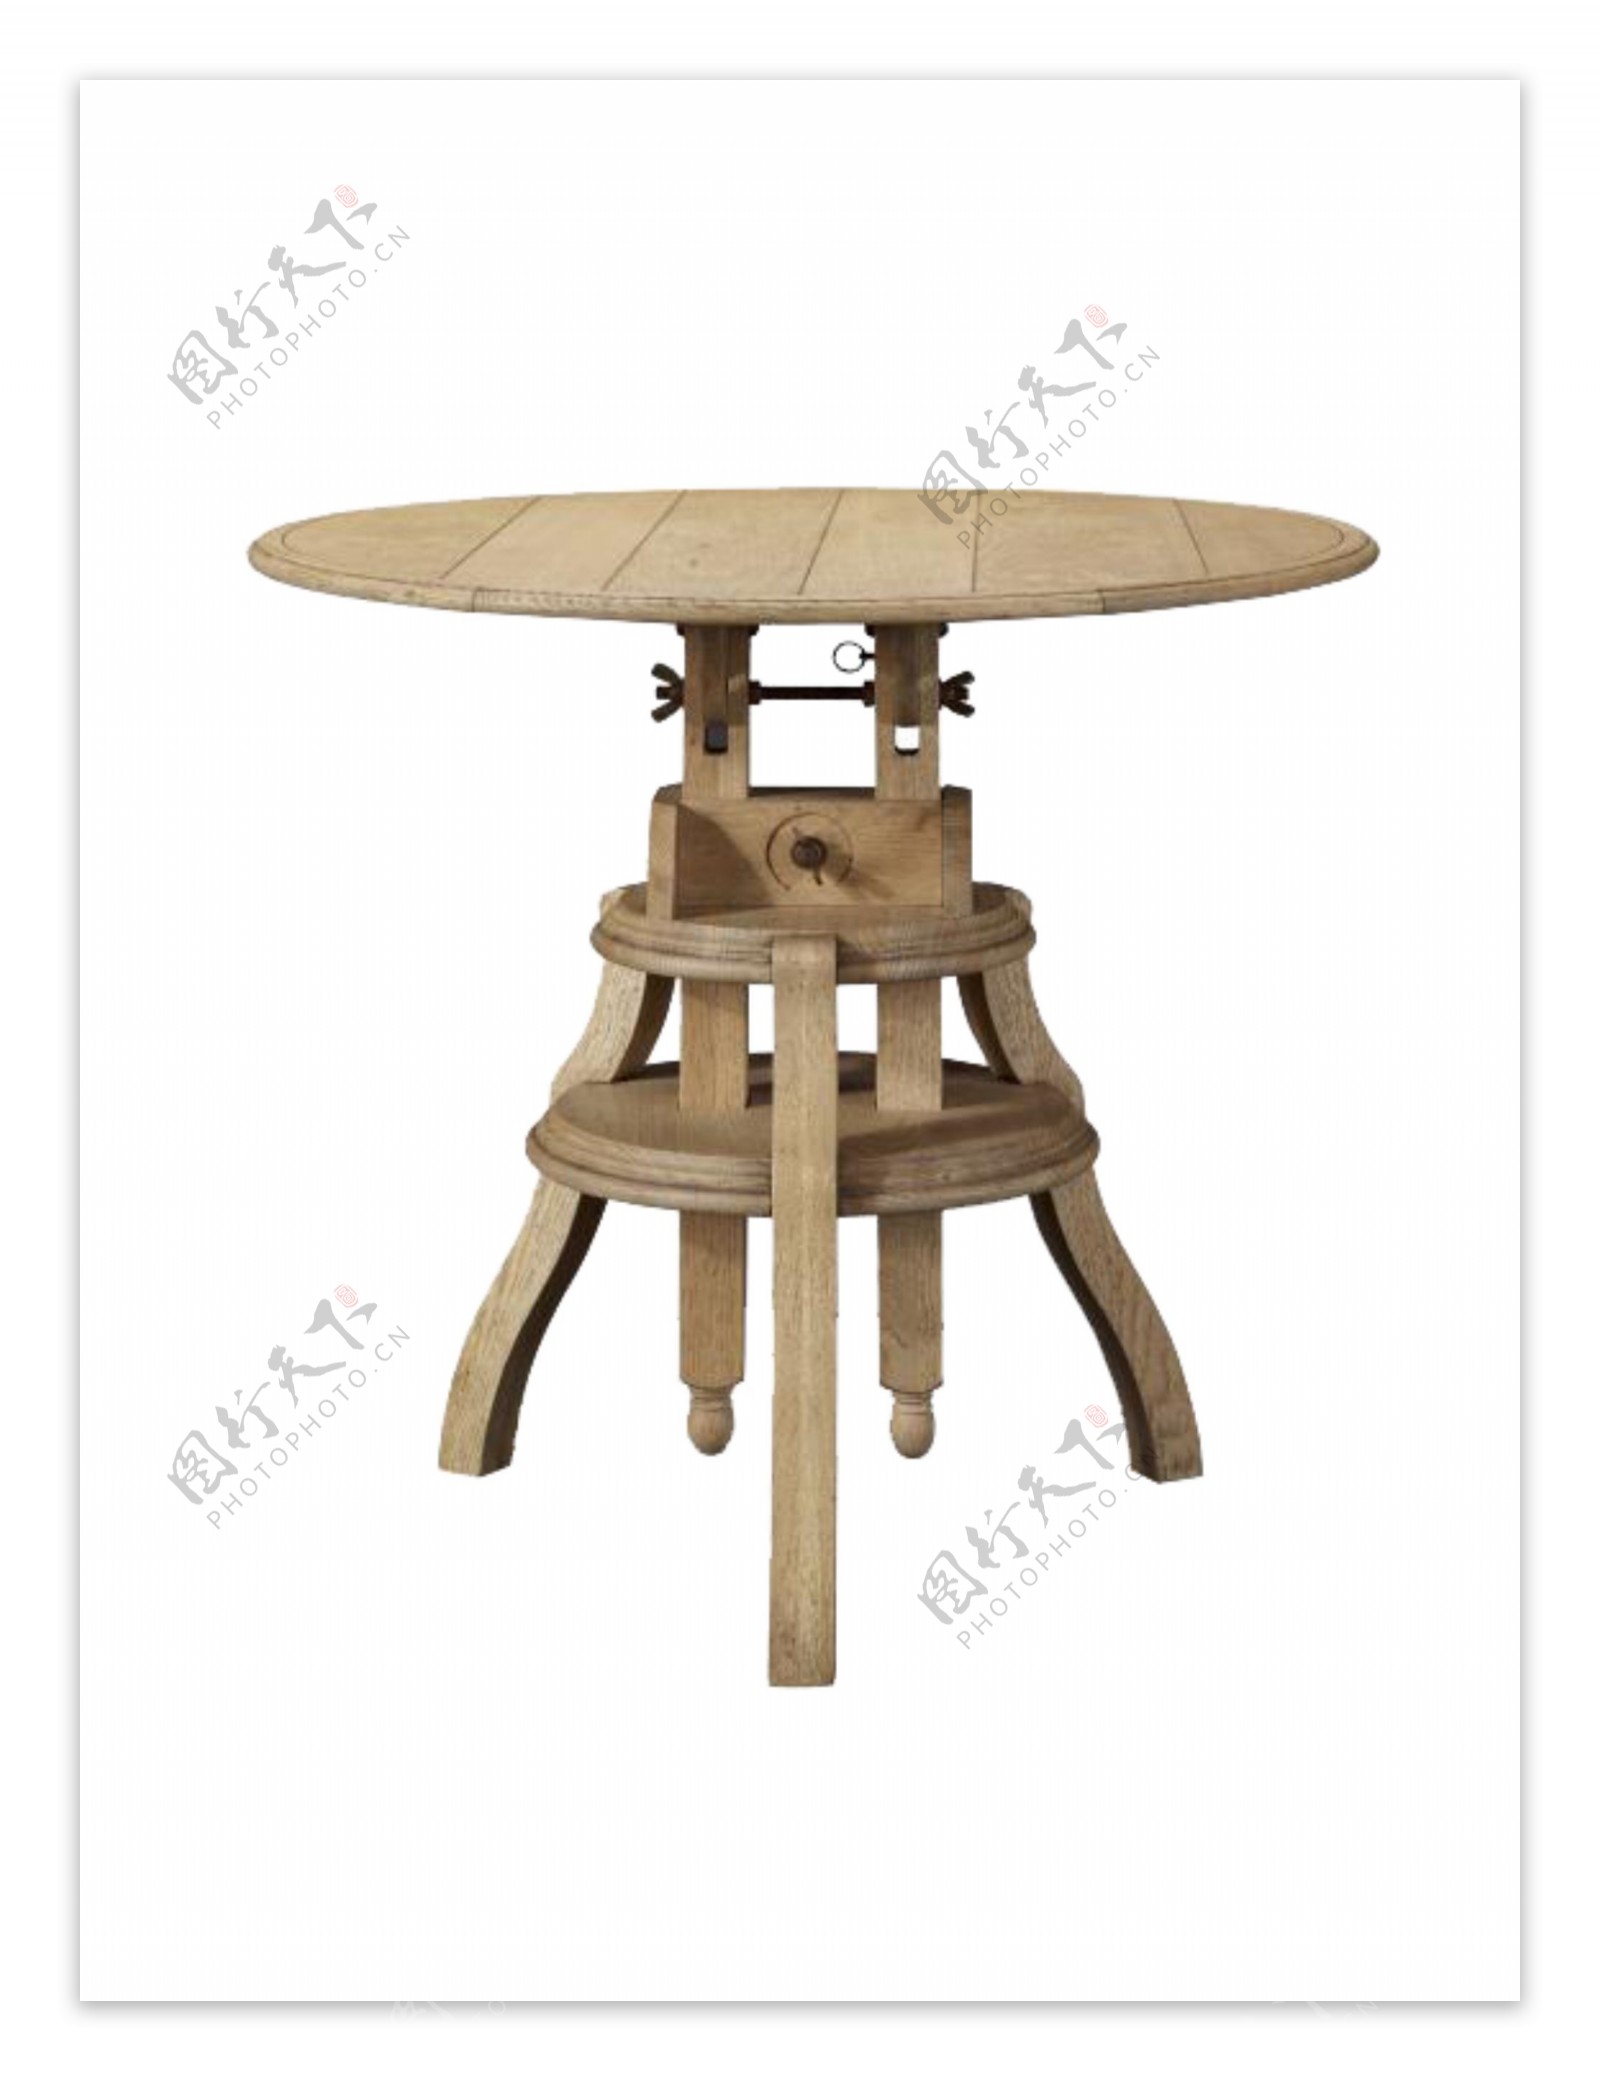 木质材质圆形桌子设计